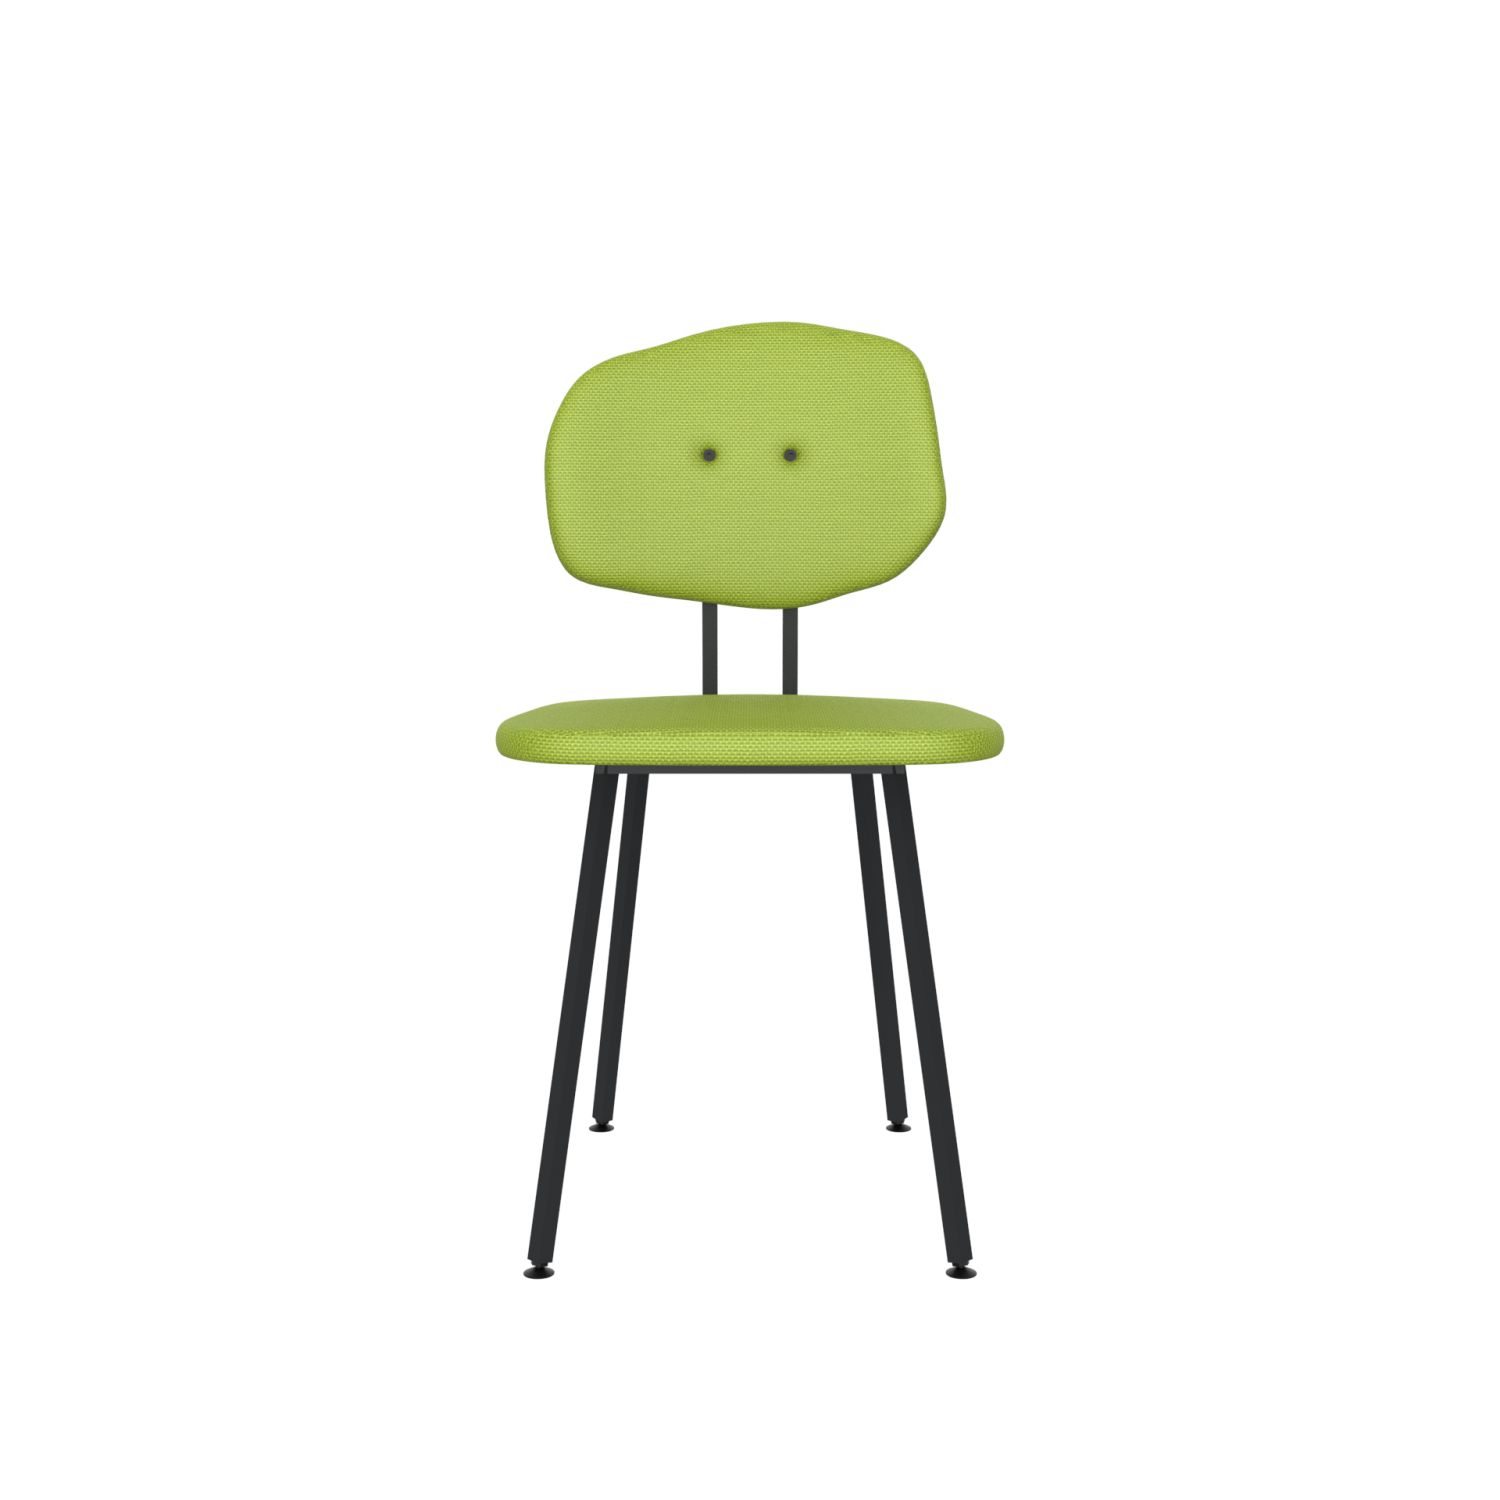 lensvelt maarten baas chair 101 not stackable without armrests backrest e fairway green 020 black ral9005 hard leg ends